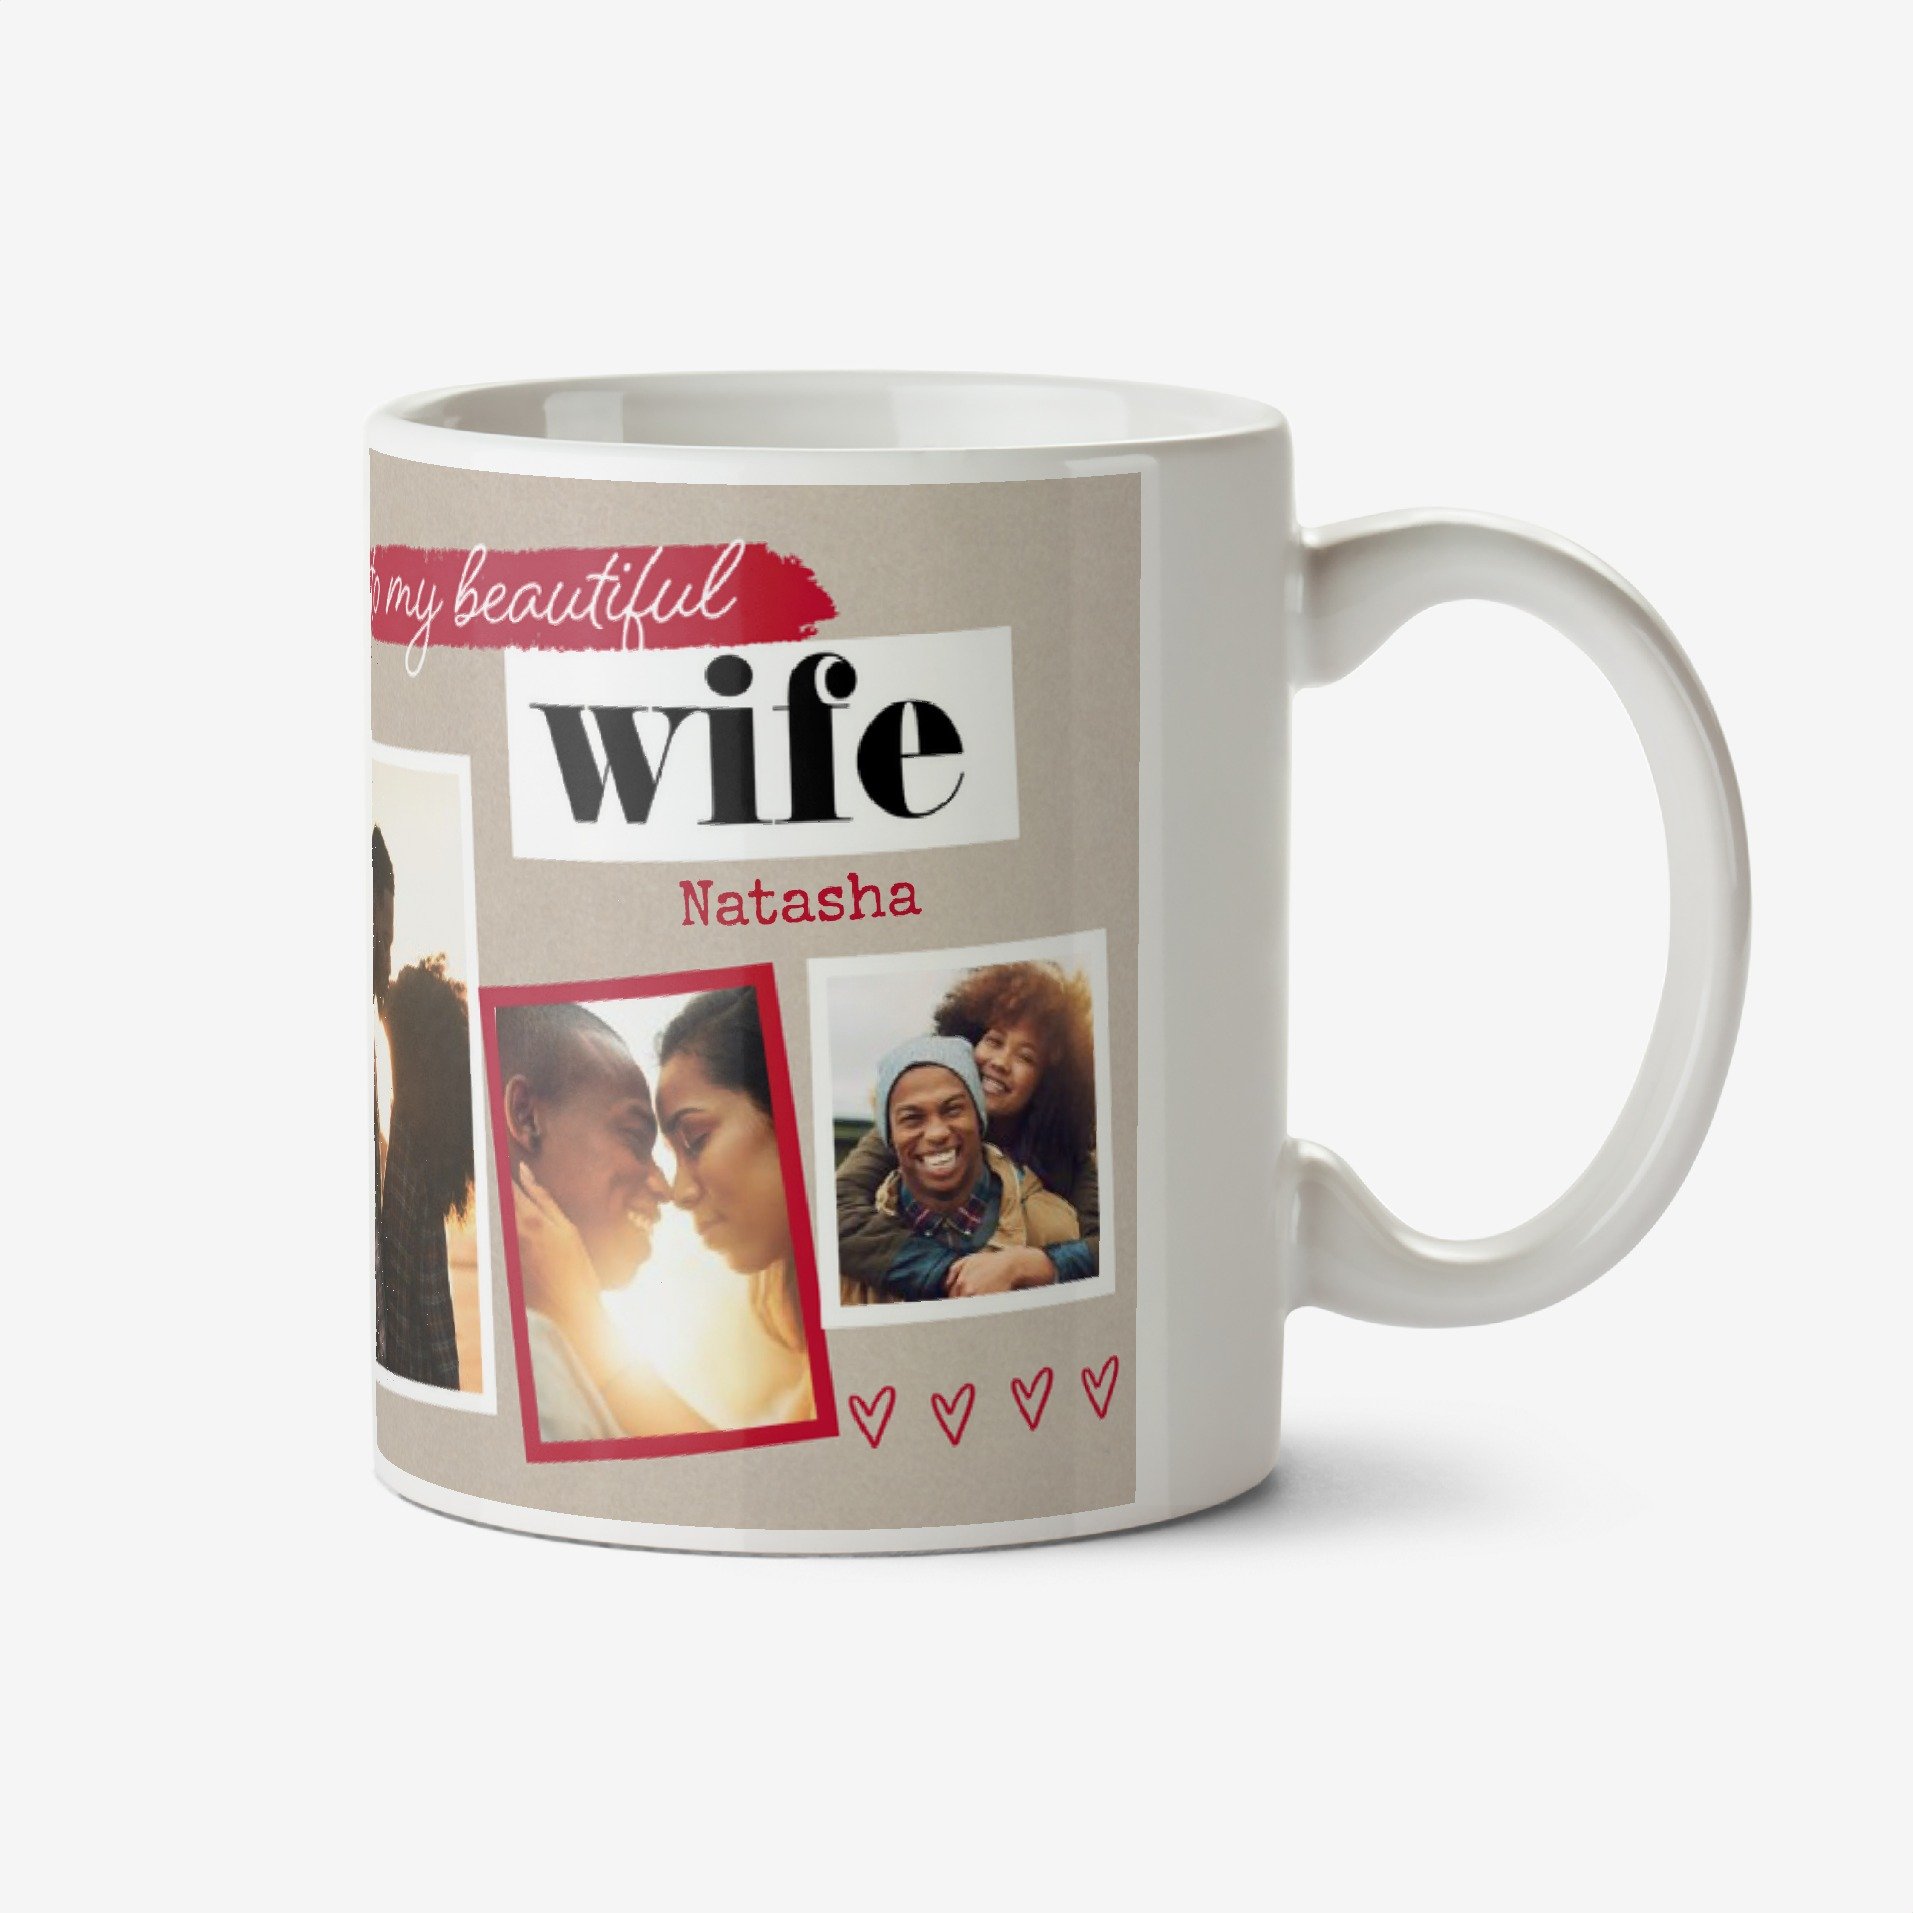 Moonpig To My Beautiful Wife Photo Upload Mug Ceramic Mug